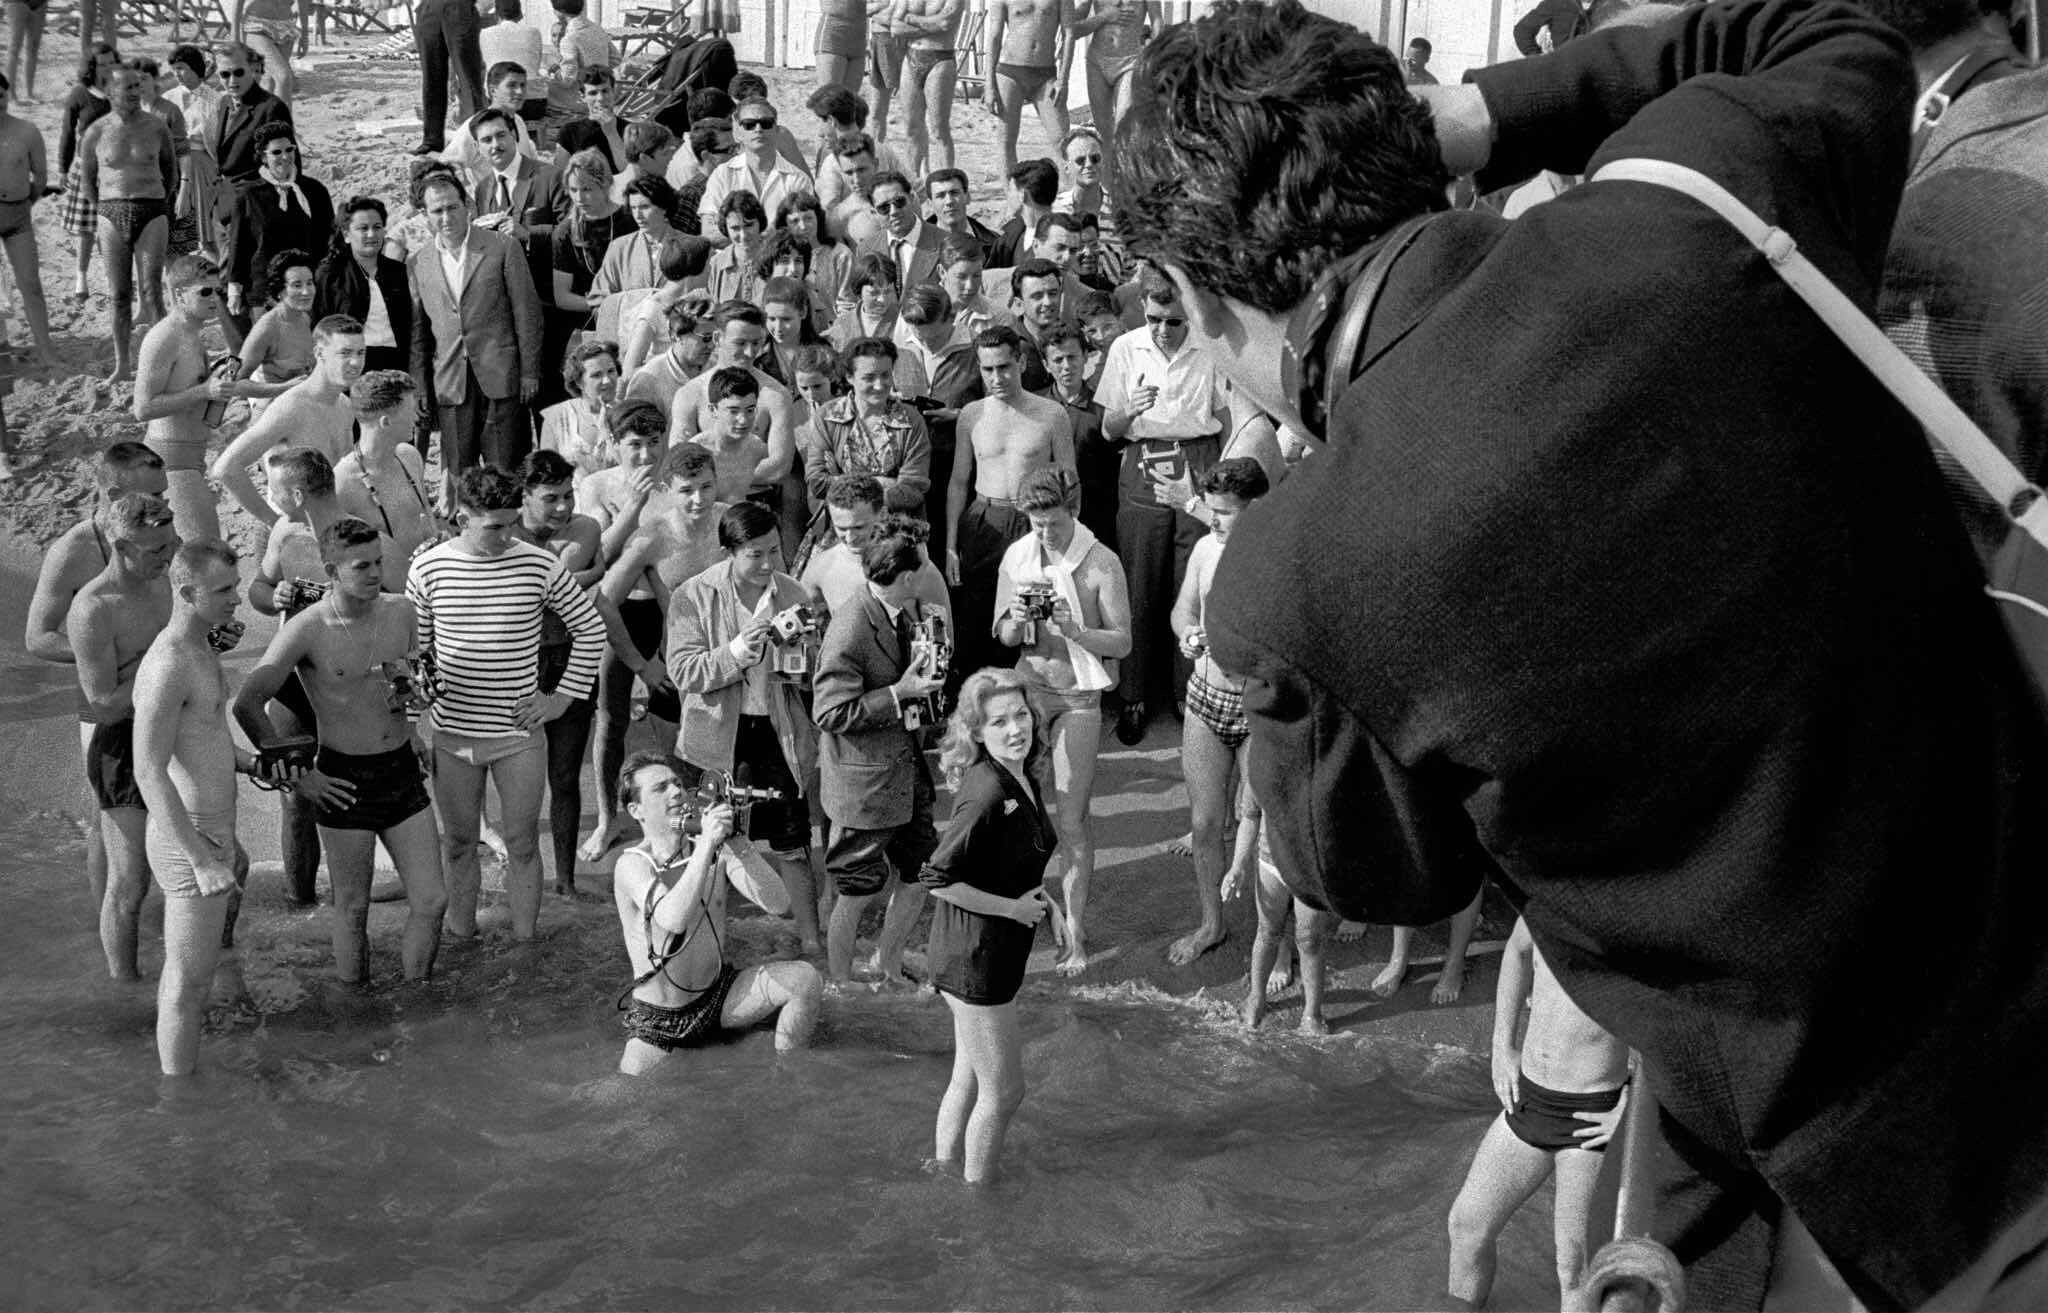 Канны, Франция, фотосессия на кинофестивале, 1950-е годы. Фотограф Франк Хорват